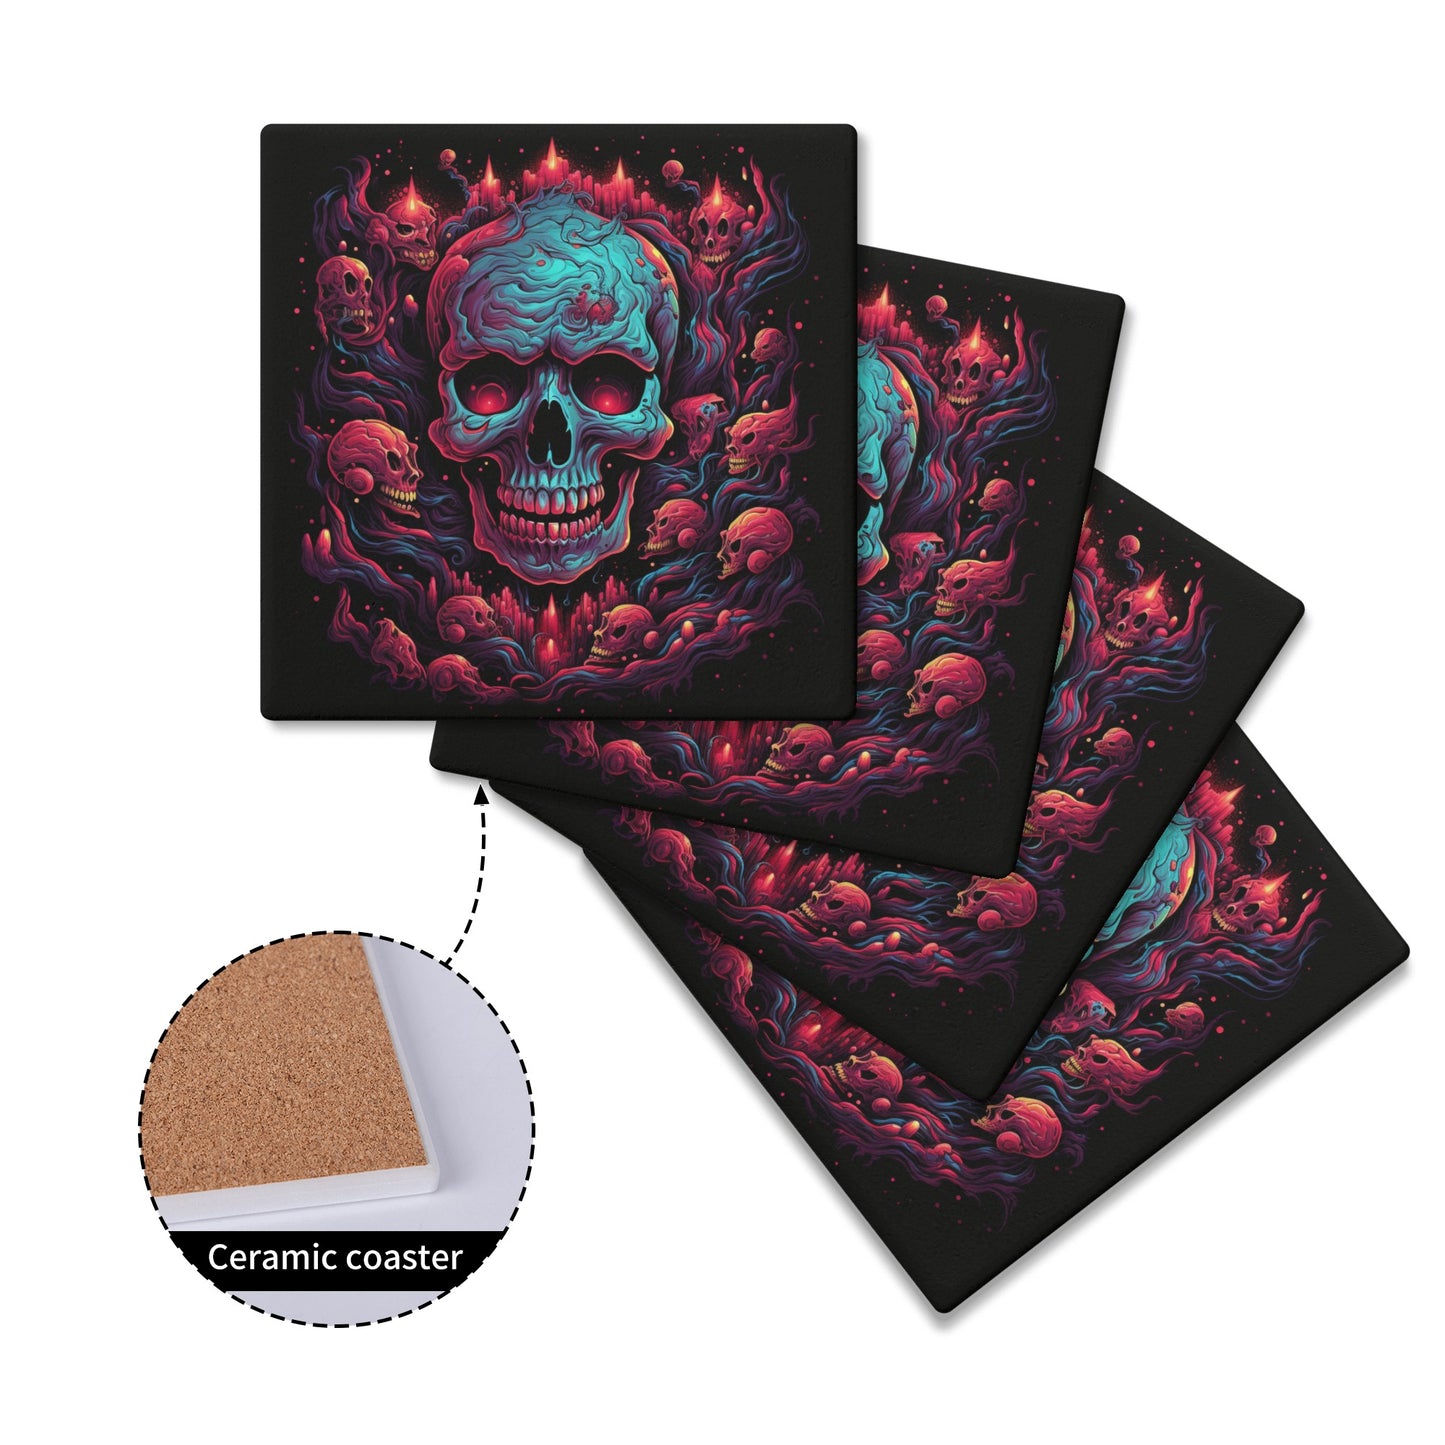 Smiling Skulls Square Ceramic Coasters (4 Pack)